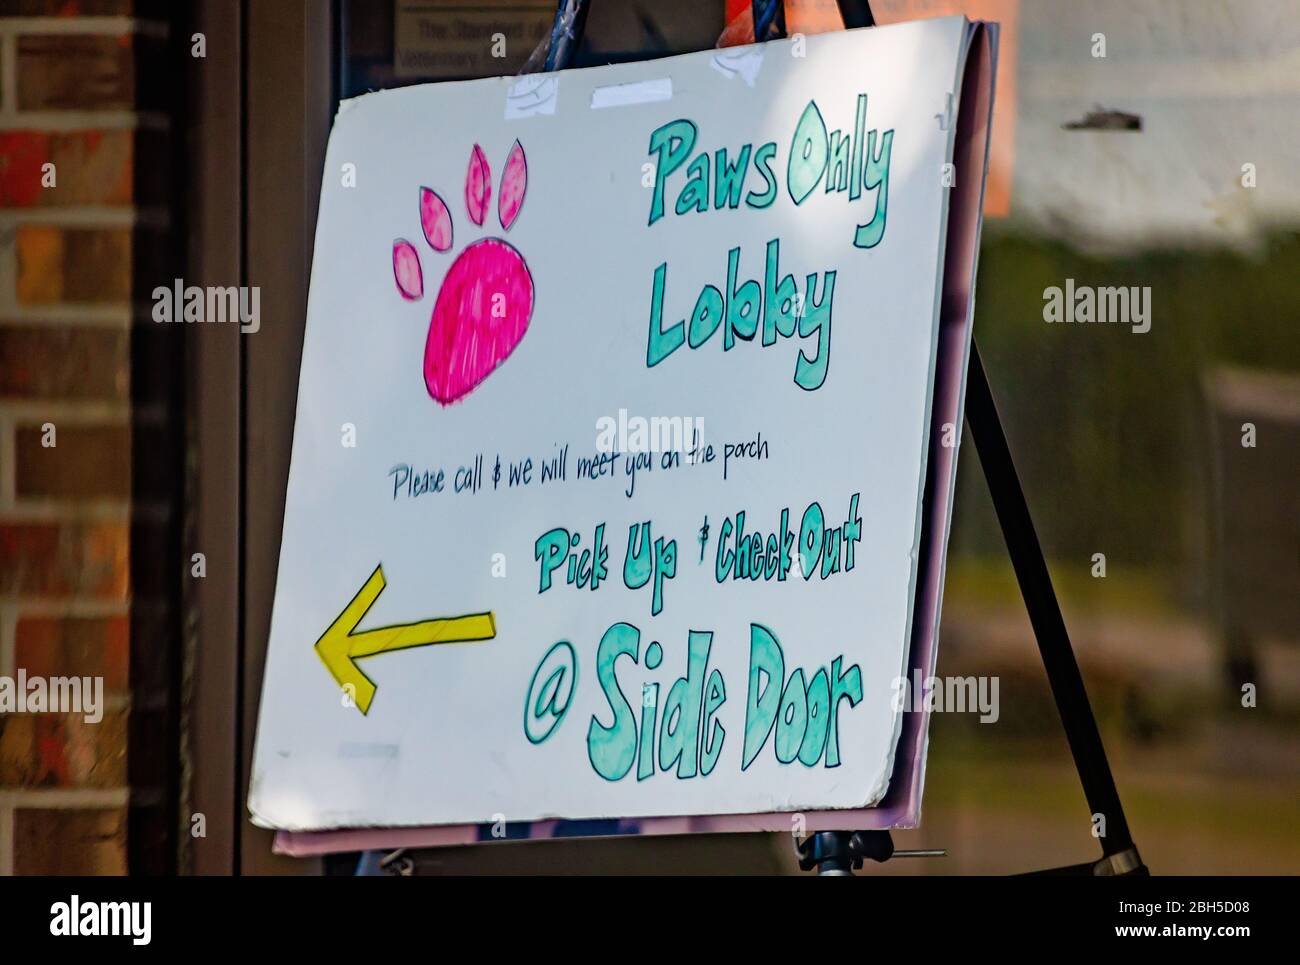 Un cartello presso un ospedale locale di animali annuncia la sua "lobby delle zampe" durante la pandemia COVID-19, 21 aprile 2020, a Mobile, Alabama. Foto Stock